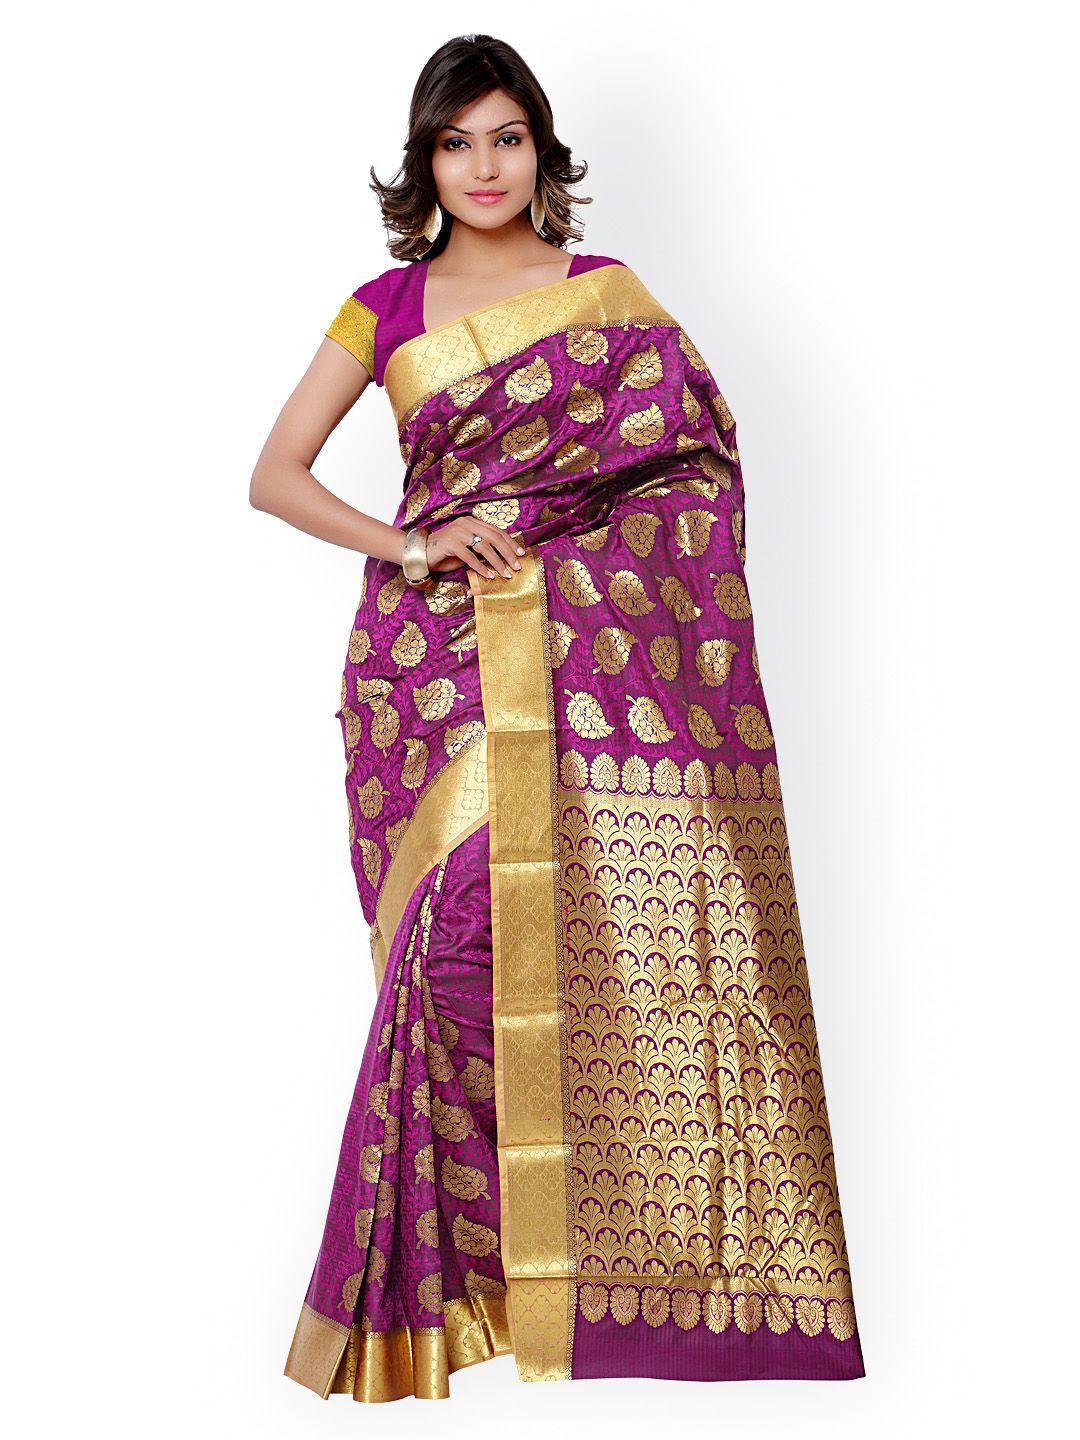 varkala silk sarees magenta kanjeevaram & jacquard art silk traditional saree